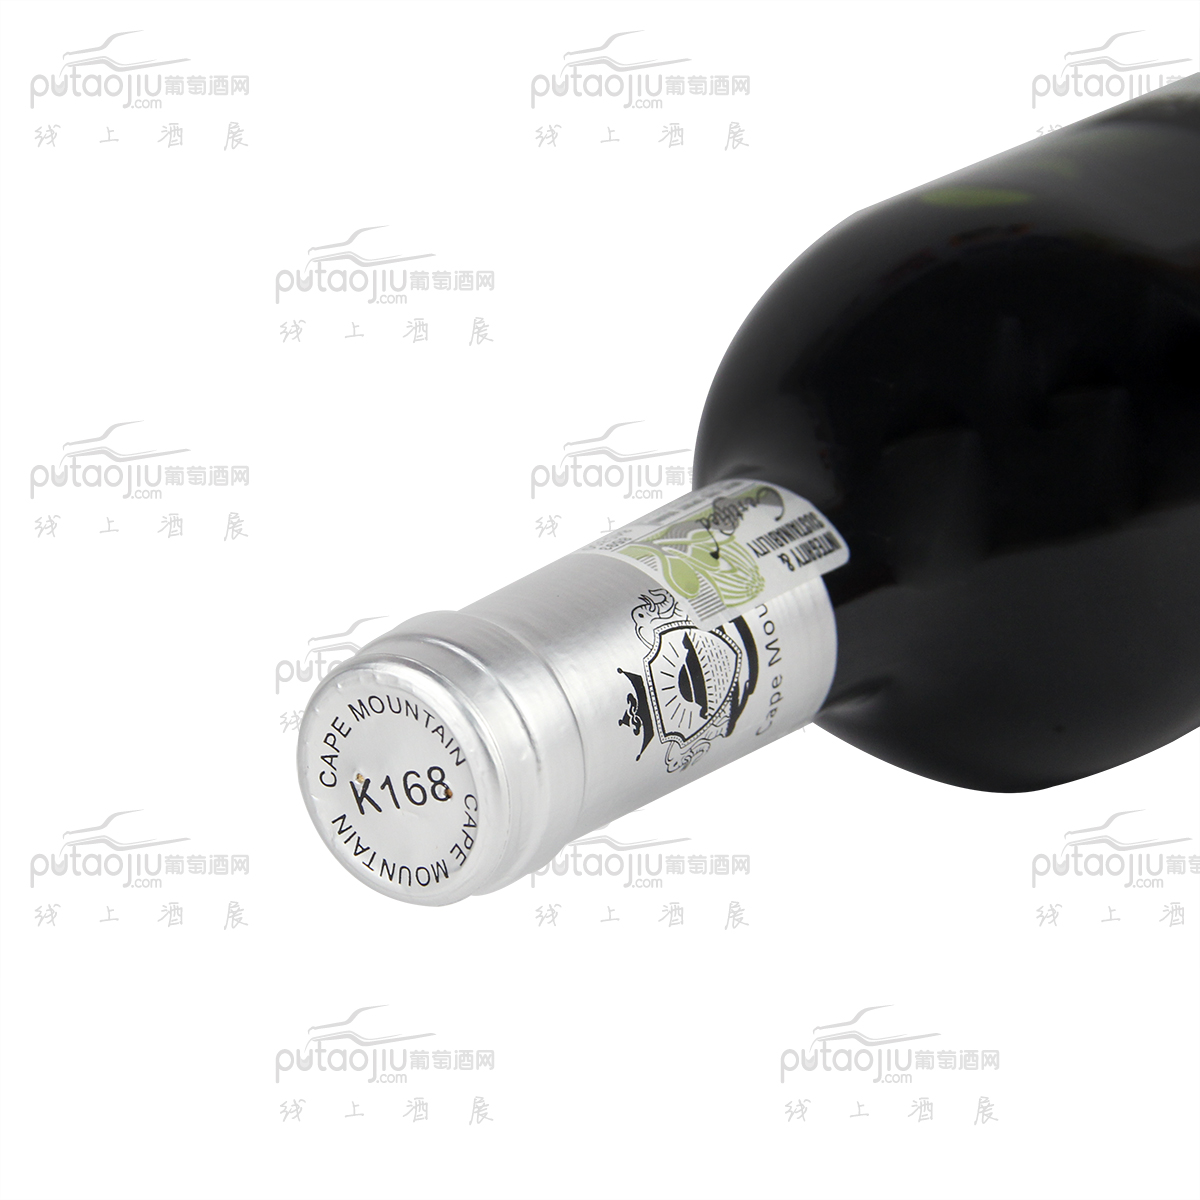 南非开普山酒庄混酿K168入门级别干红葡萄酒